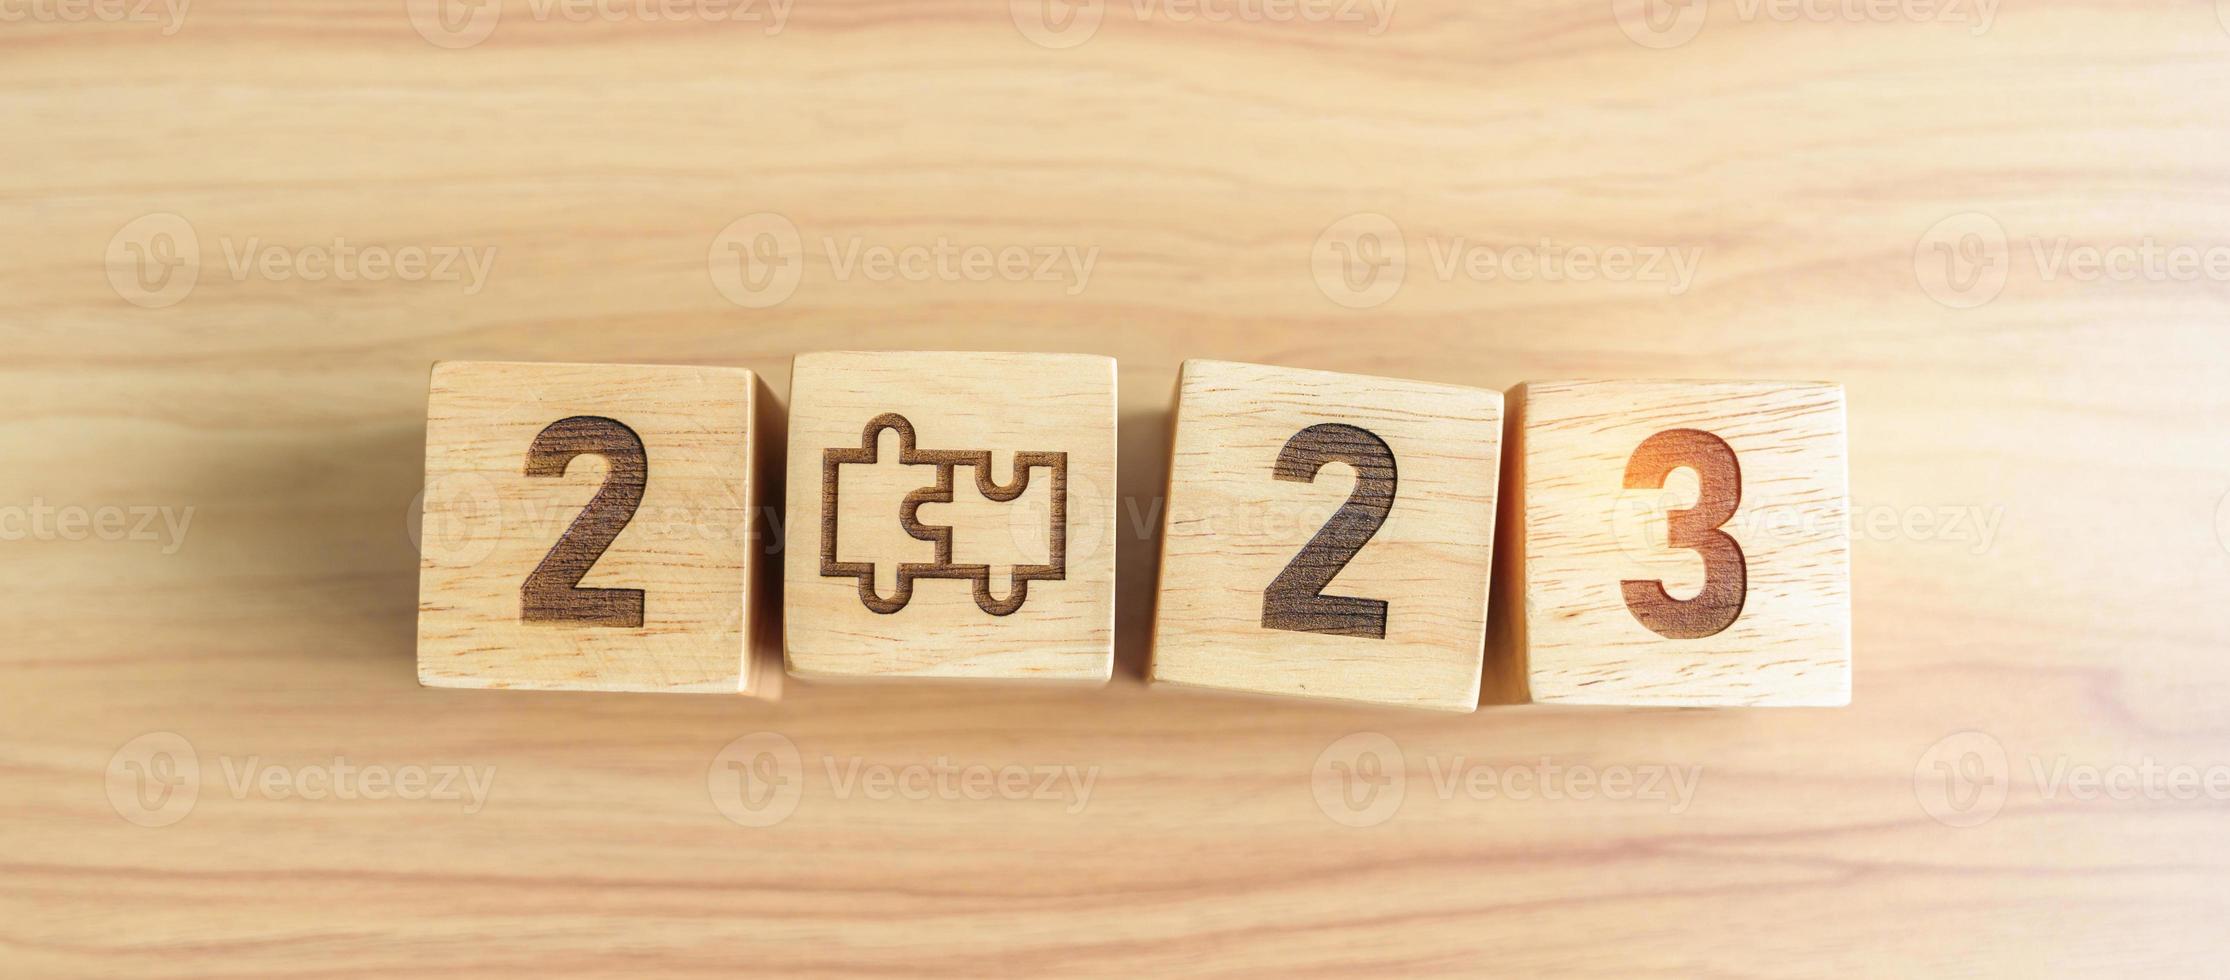 2023-Block mit Puzzle-Symbol. geschäftsprozess, team, teamarbeit, ziel, mission, auflösung, strategie, plan, aktion, partnerschaft, zusammenarbeit, brainstorming und neujahrsstart foto